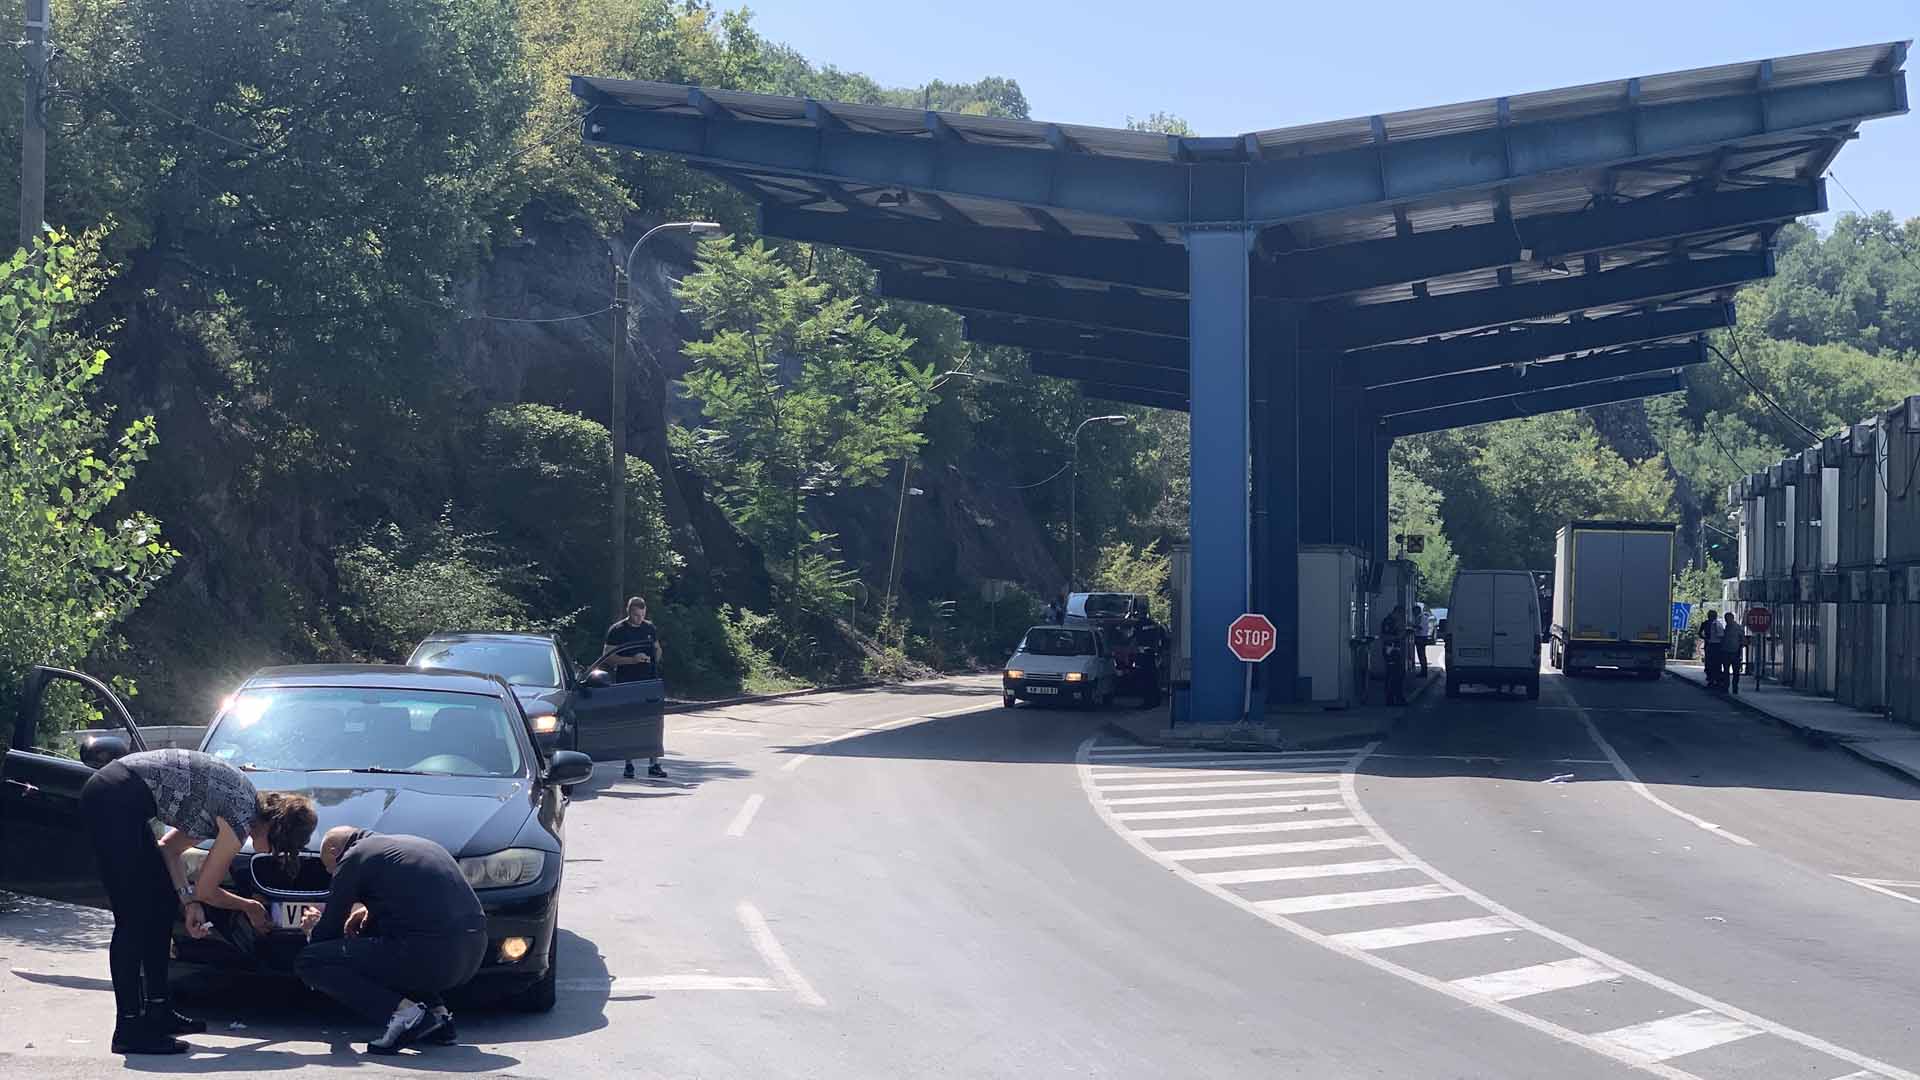 Am Grenzübergang Jarinje (Kosovo/Serbien) werden Kfz-Kennzeichen umgeklebt | ARD Wien